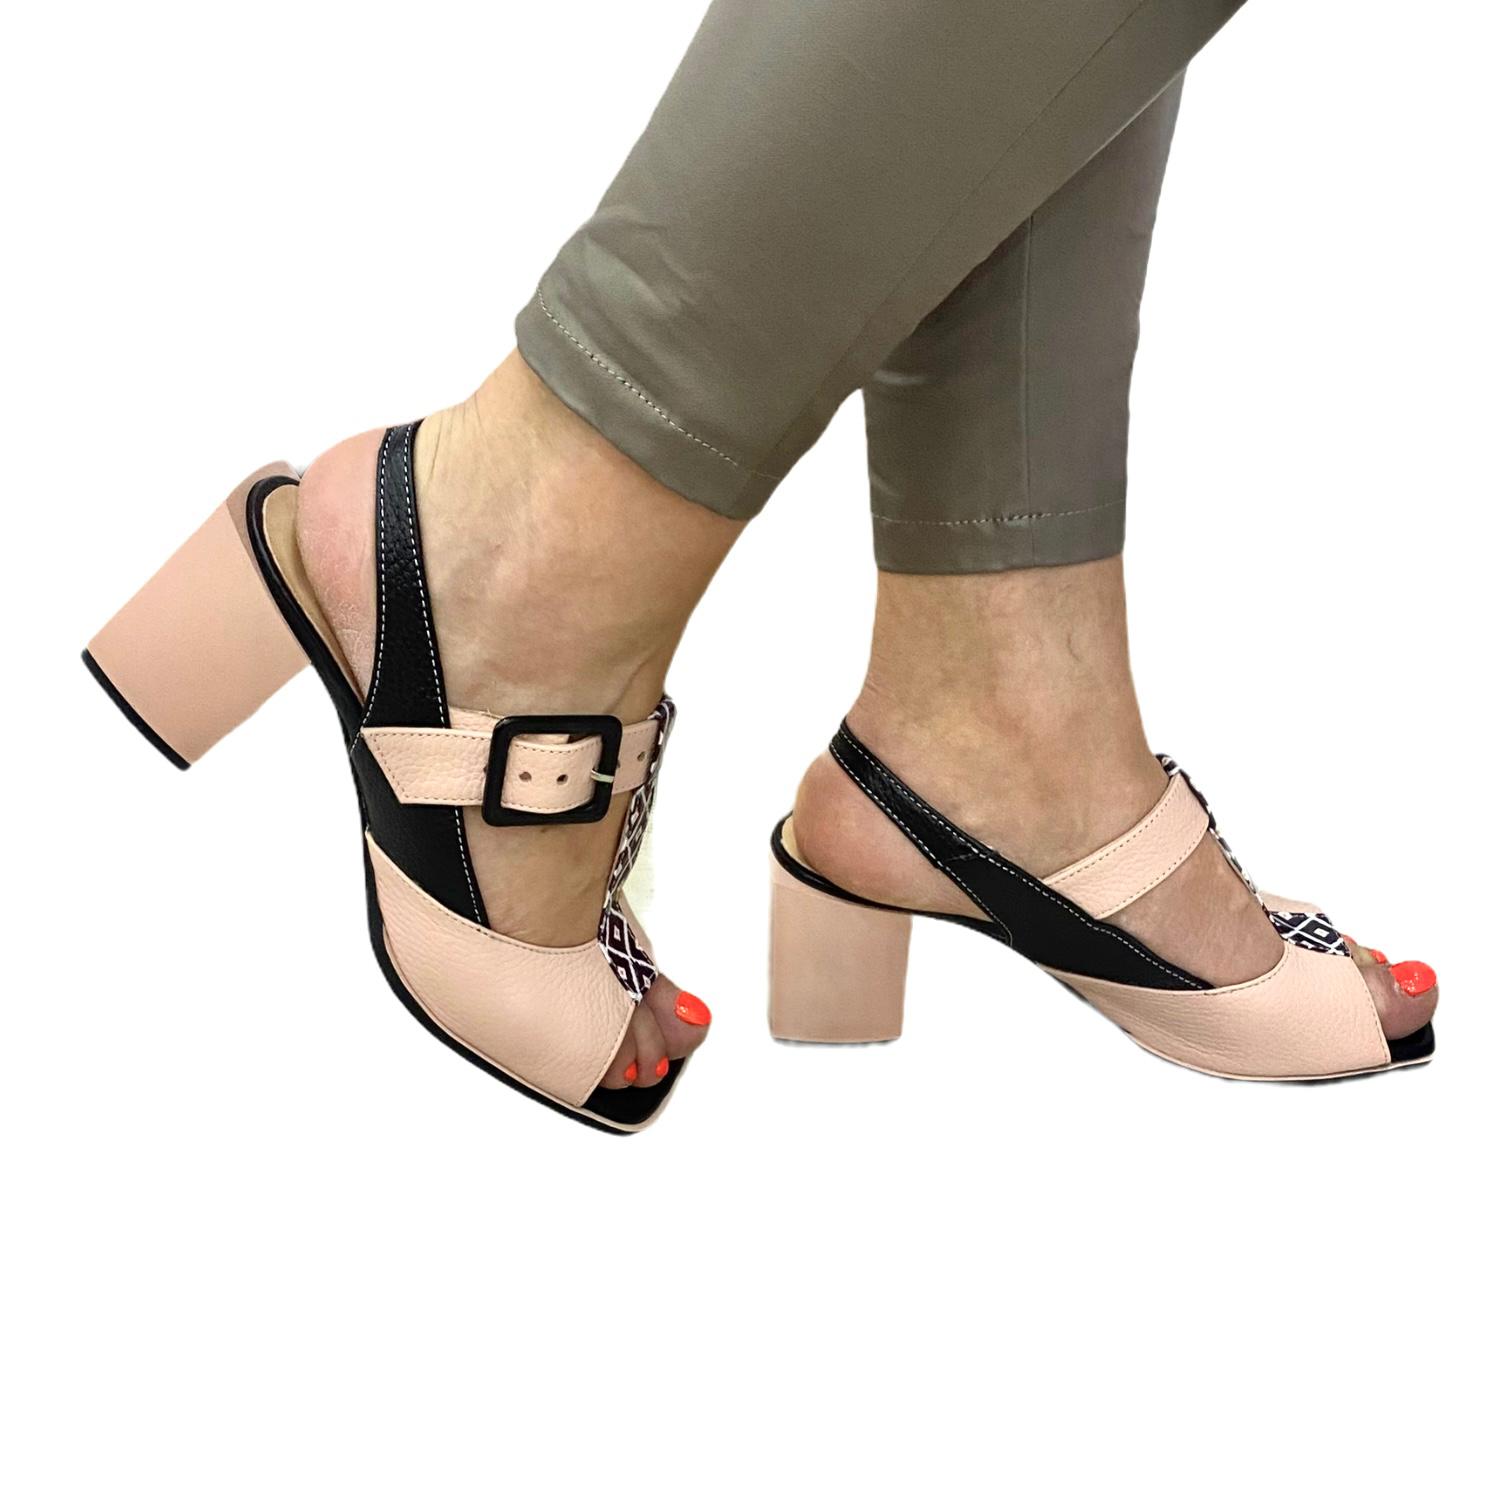 Sandale pudra cu detalii negre si model